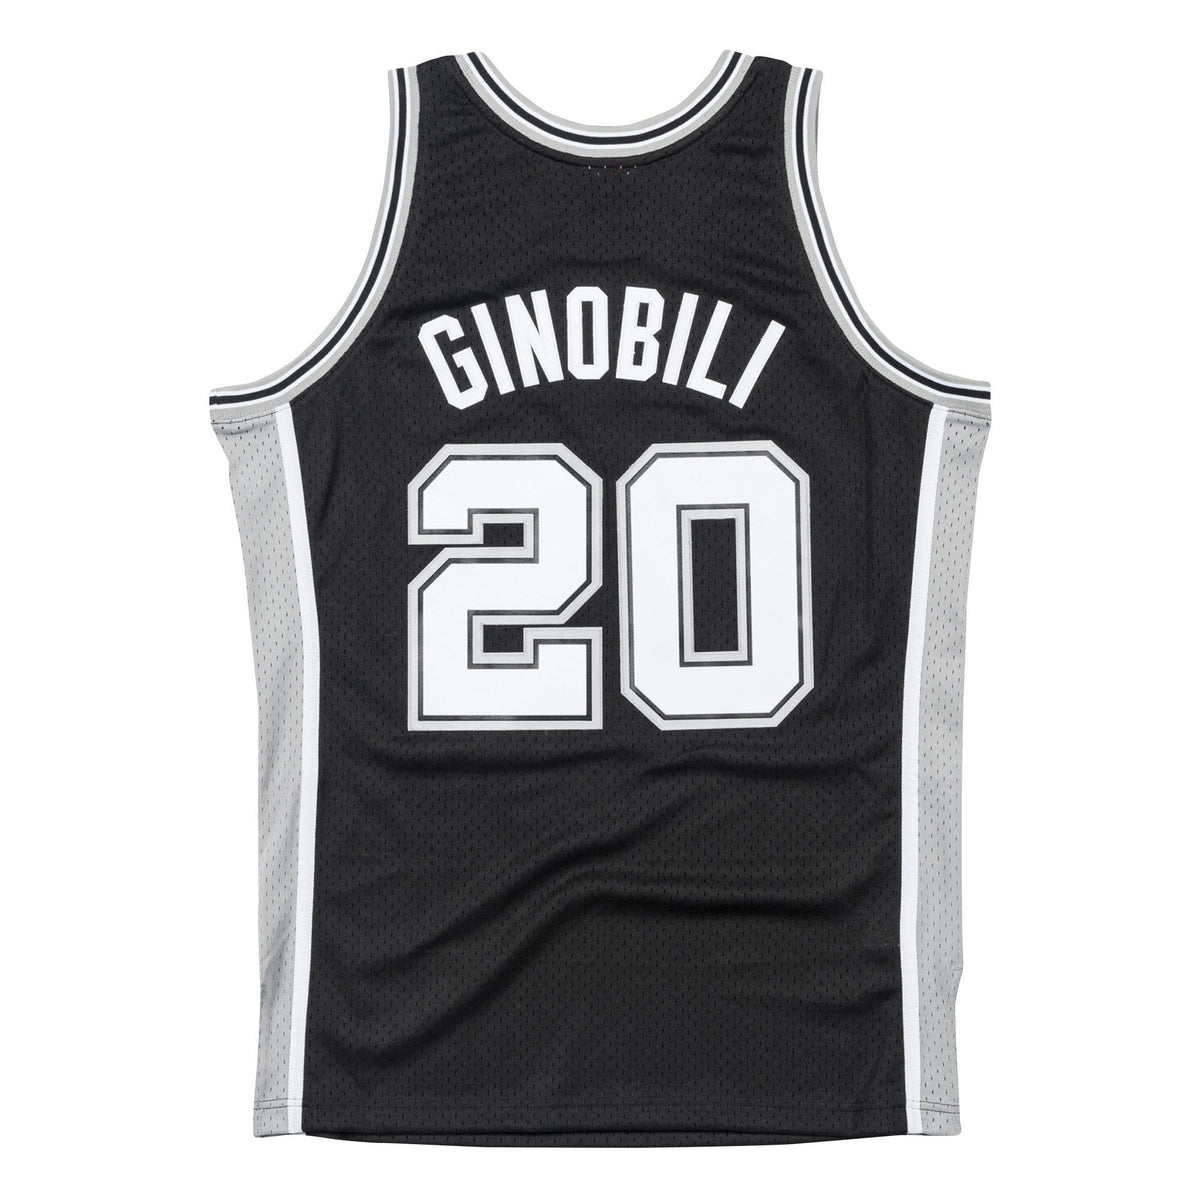 Cheap San Antonio Spurs Apparel, Discount Spurs Gear, NBA Spurs Merchandise  On Sale